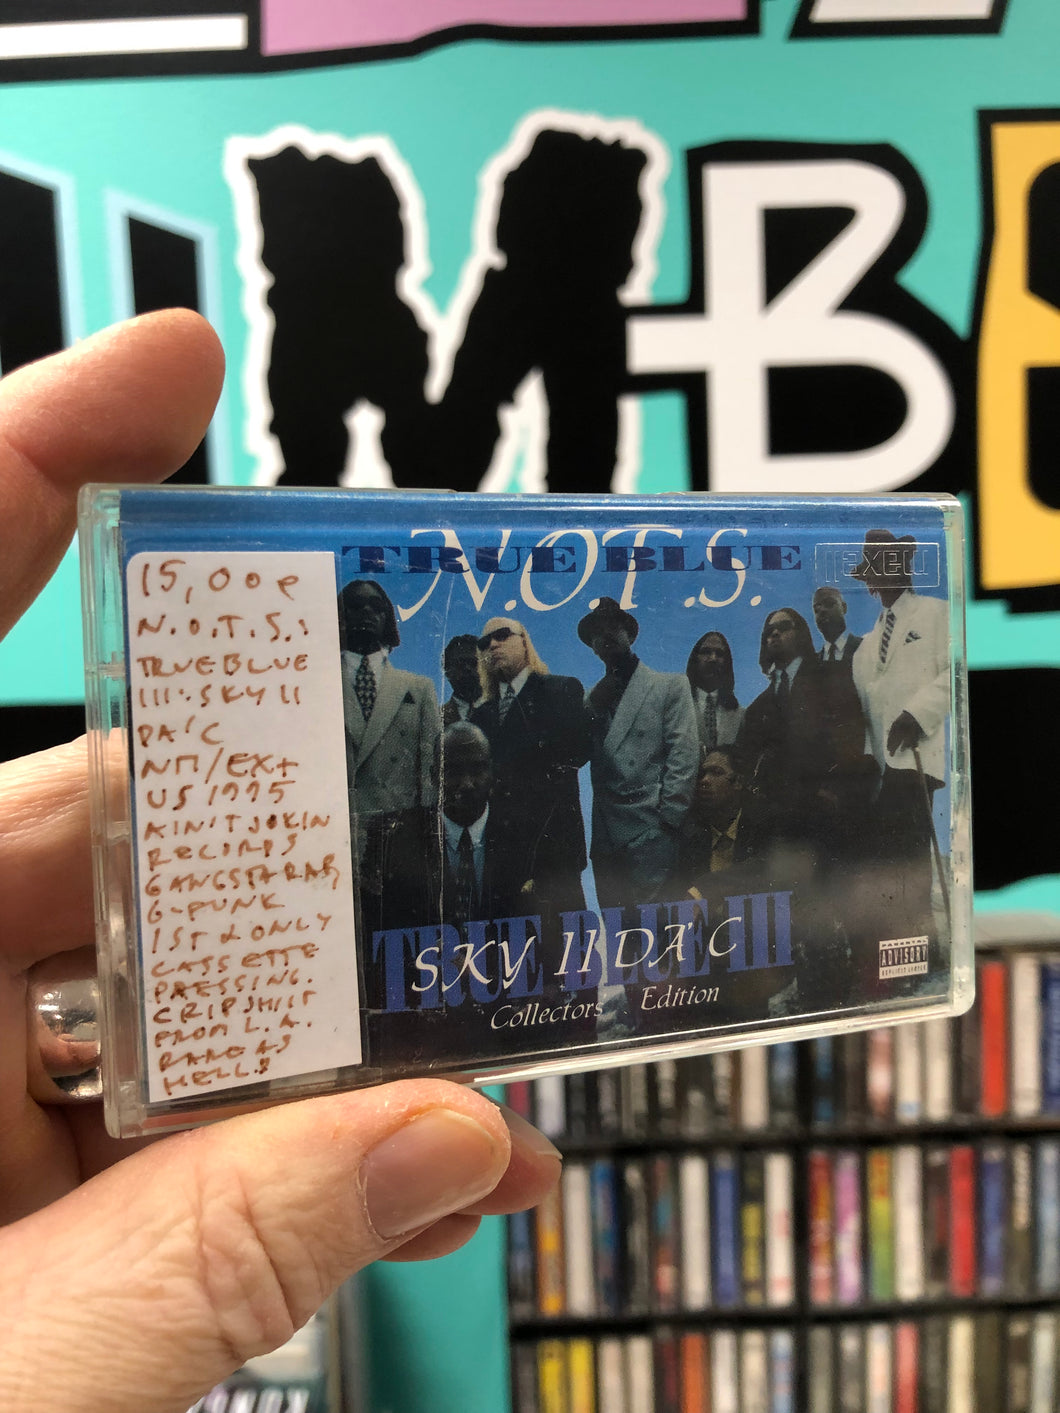 N.O.T.S. - True Blue III: Sky II Da’ C, OG, kasetti